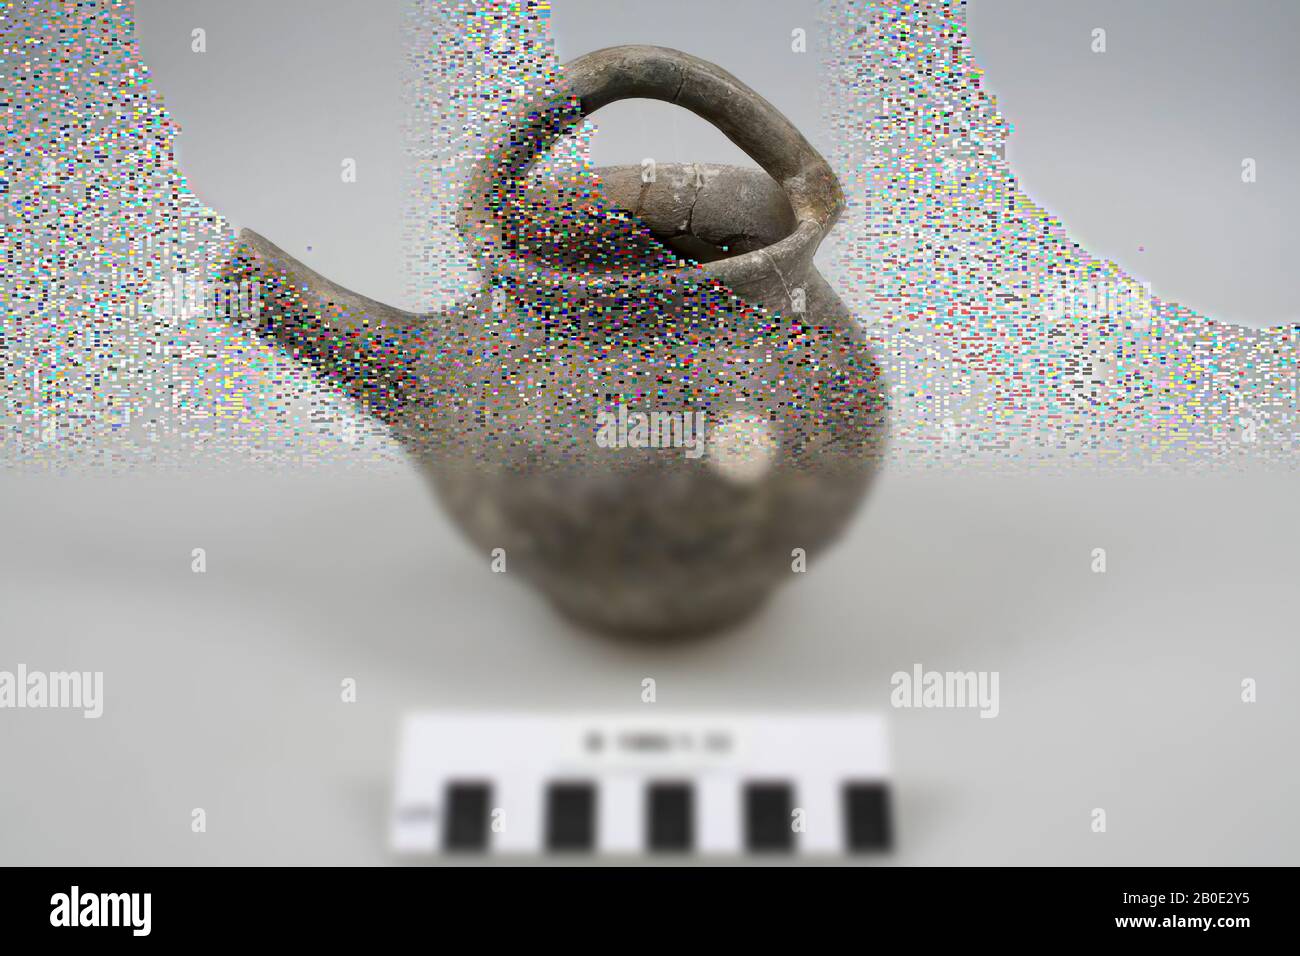 Vajilla, loza, H 14 cm, D 11.6 cm, B incl Boquilla 16.3 cm, cuello D 8 cm, Irán Foto de stock